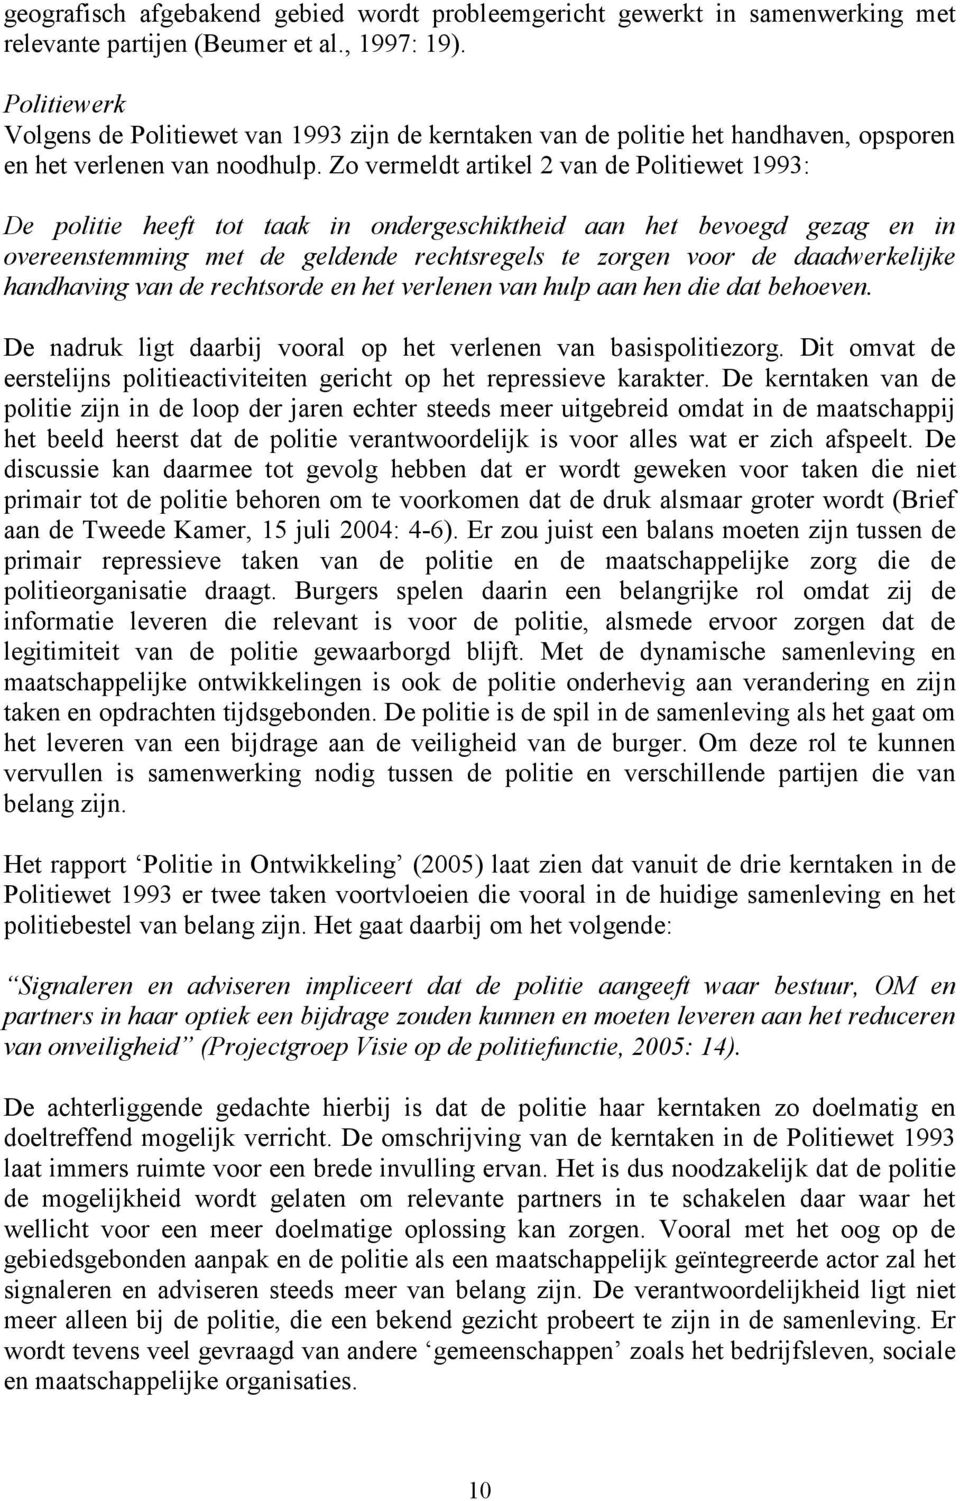 Zo vermeldt artikel 2 van de Politiewet 1993: De politie heeft tot taak in ondergeschiktheid aan het bevoegd gezag en in overeenstemming met de geldende rechtsregels te zorgen voor de daadwerkelijke